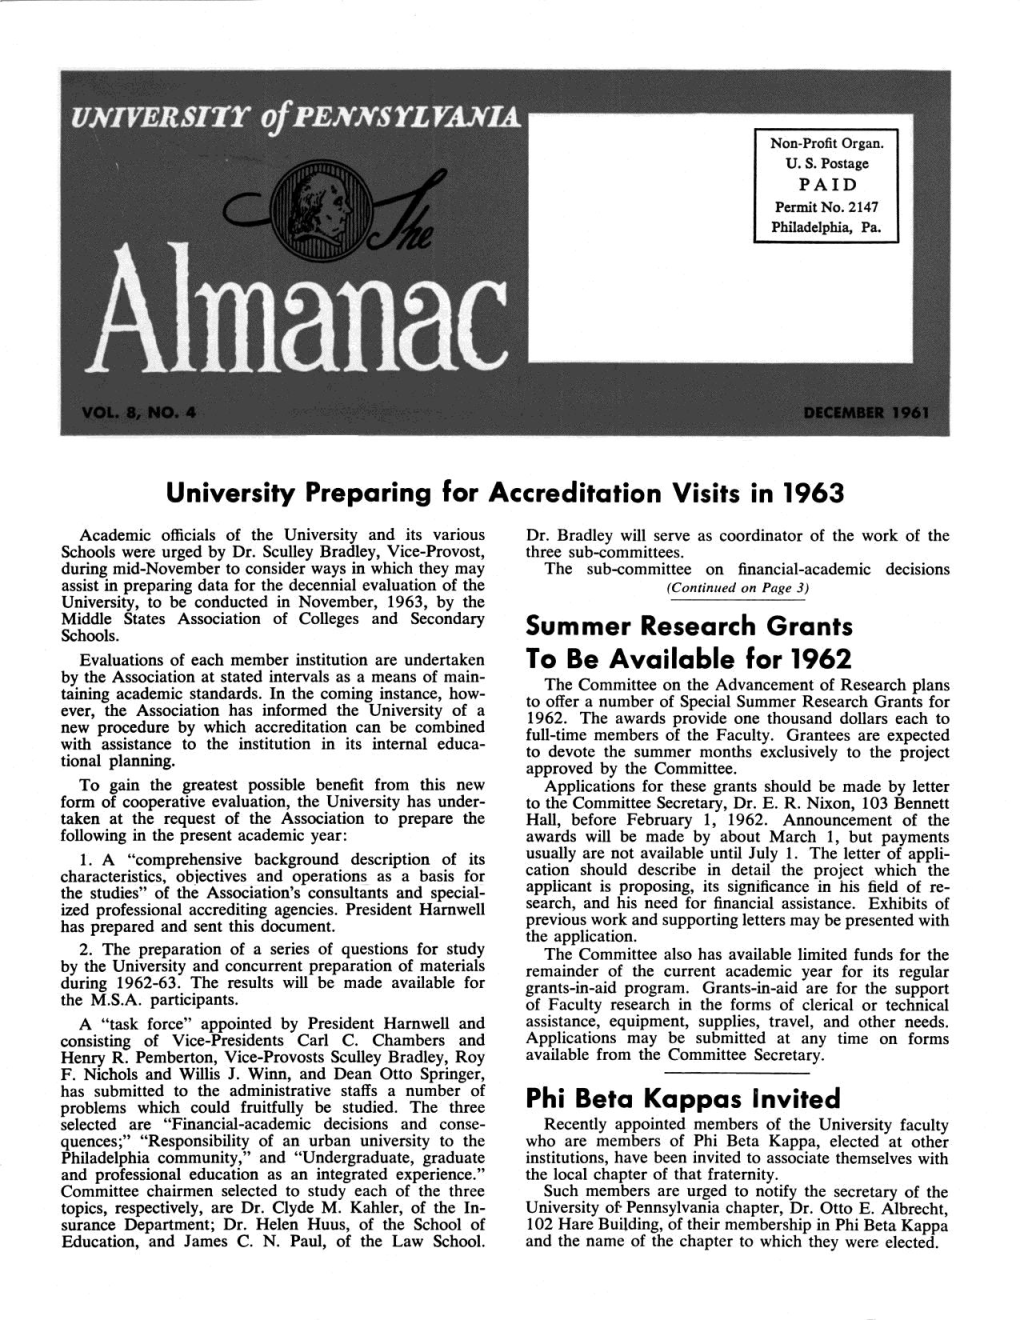 Almanac, December 1961, Vol. 8, No. 4